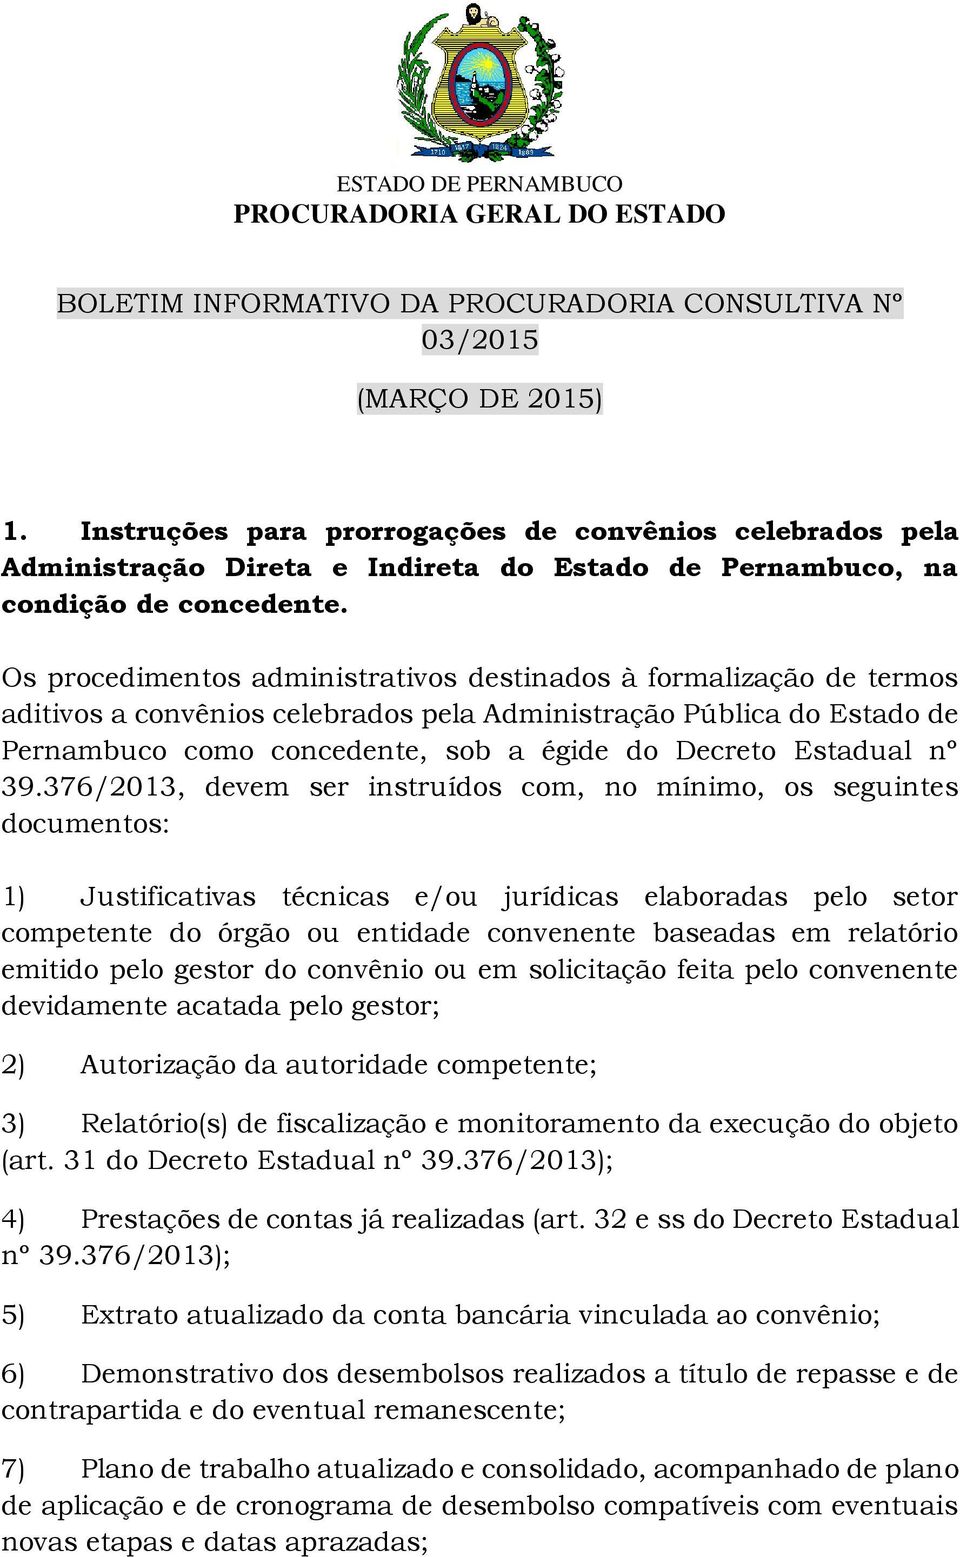 Os procedimentos administrativos destinados à formalização de termos aditivos a convênios celebrados pela Administração Pública do Estado de Pernambuco como concedente, sob a égide do Decreto